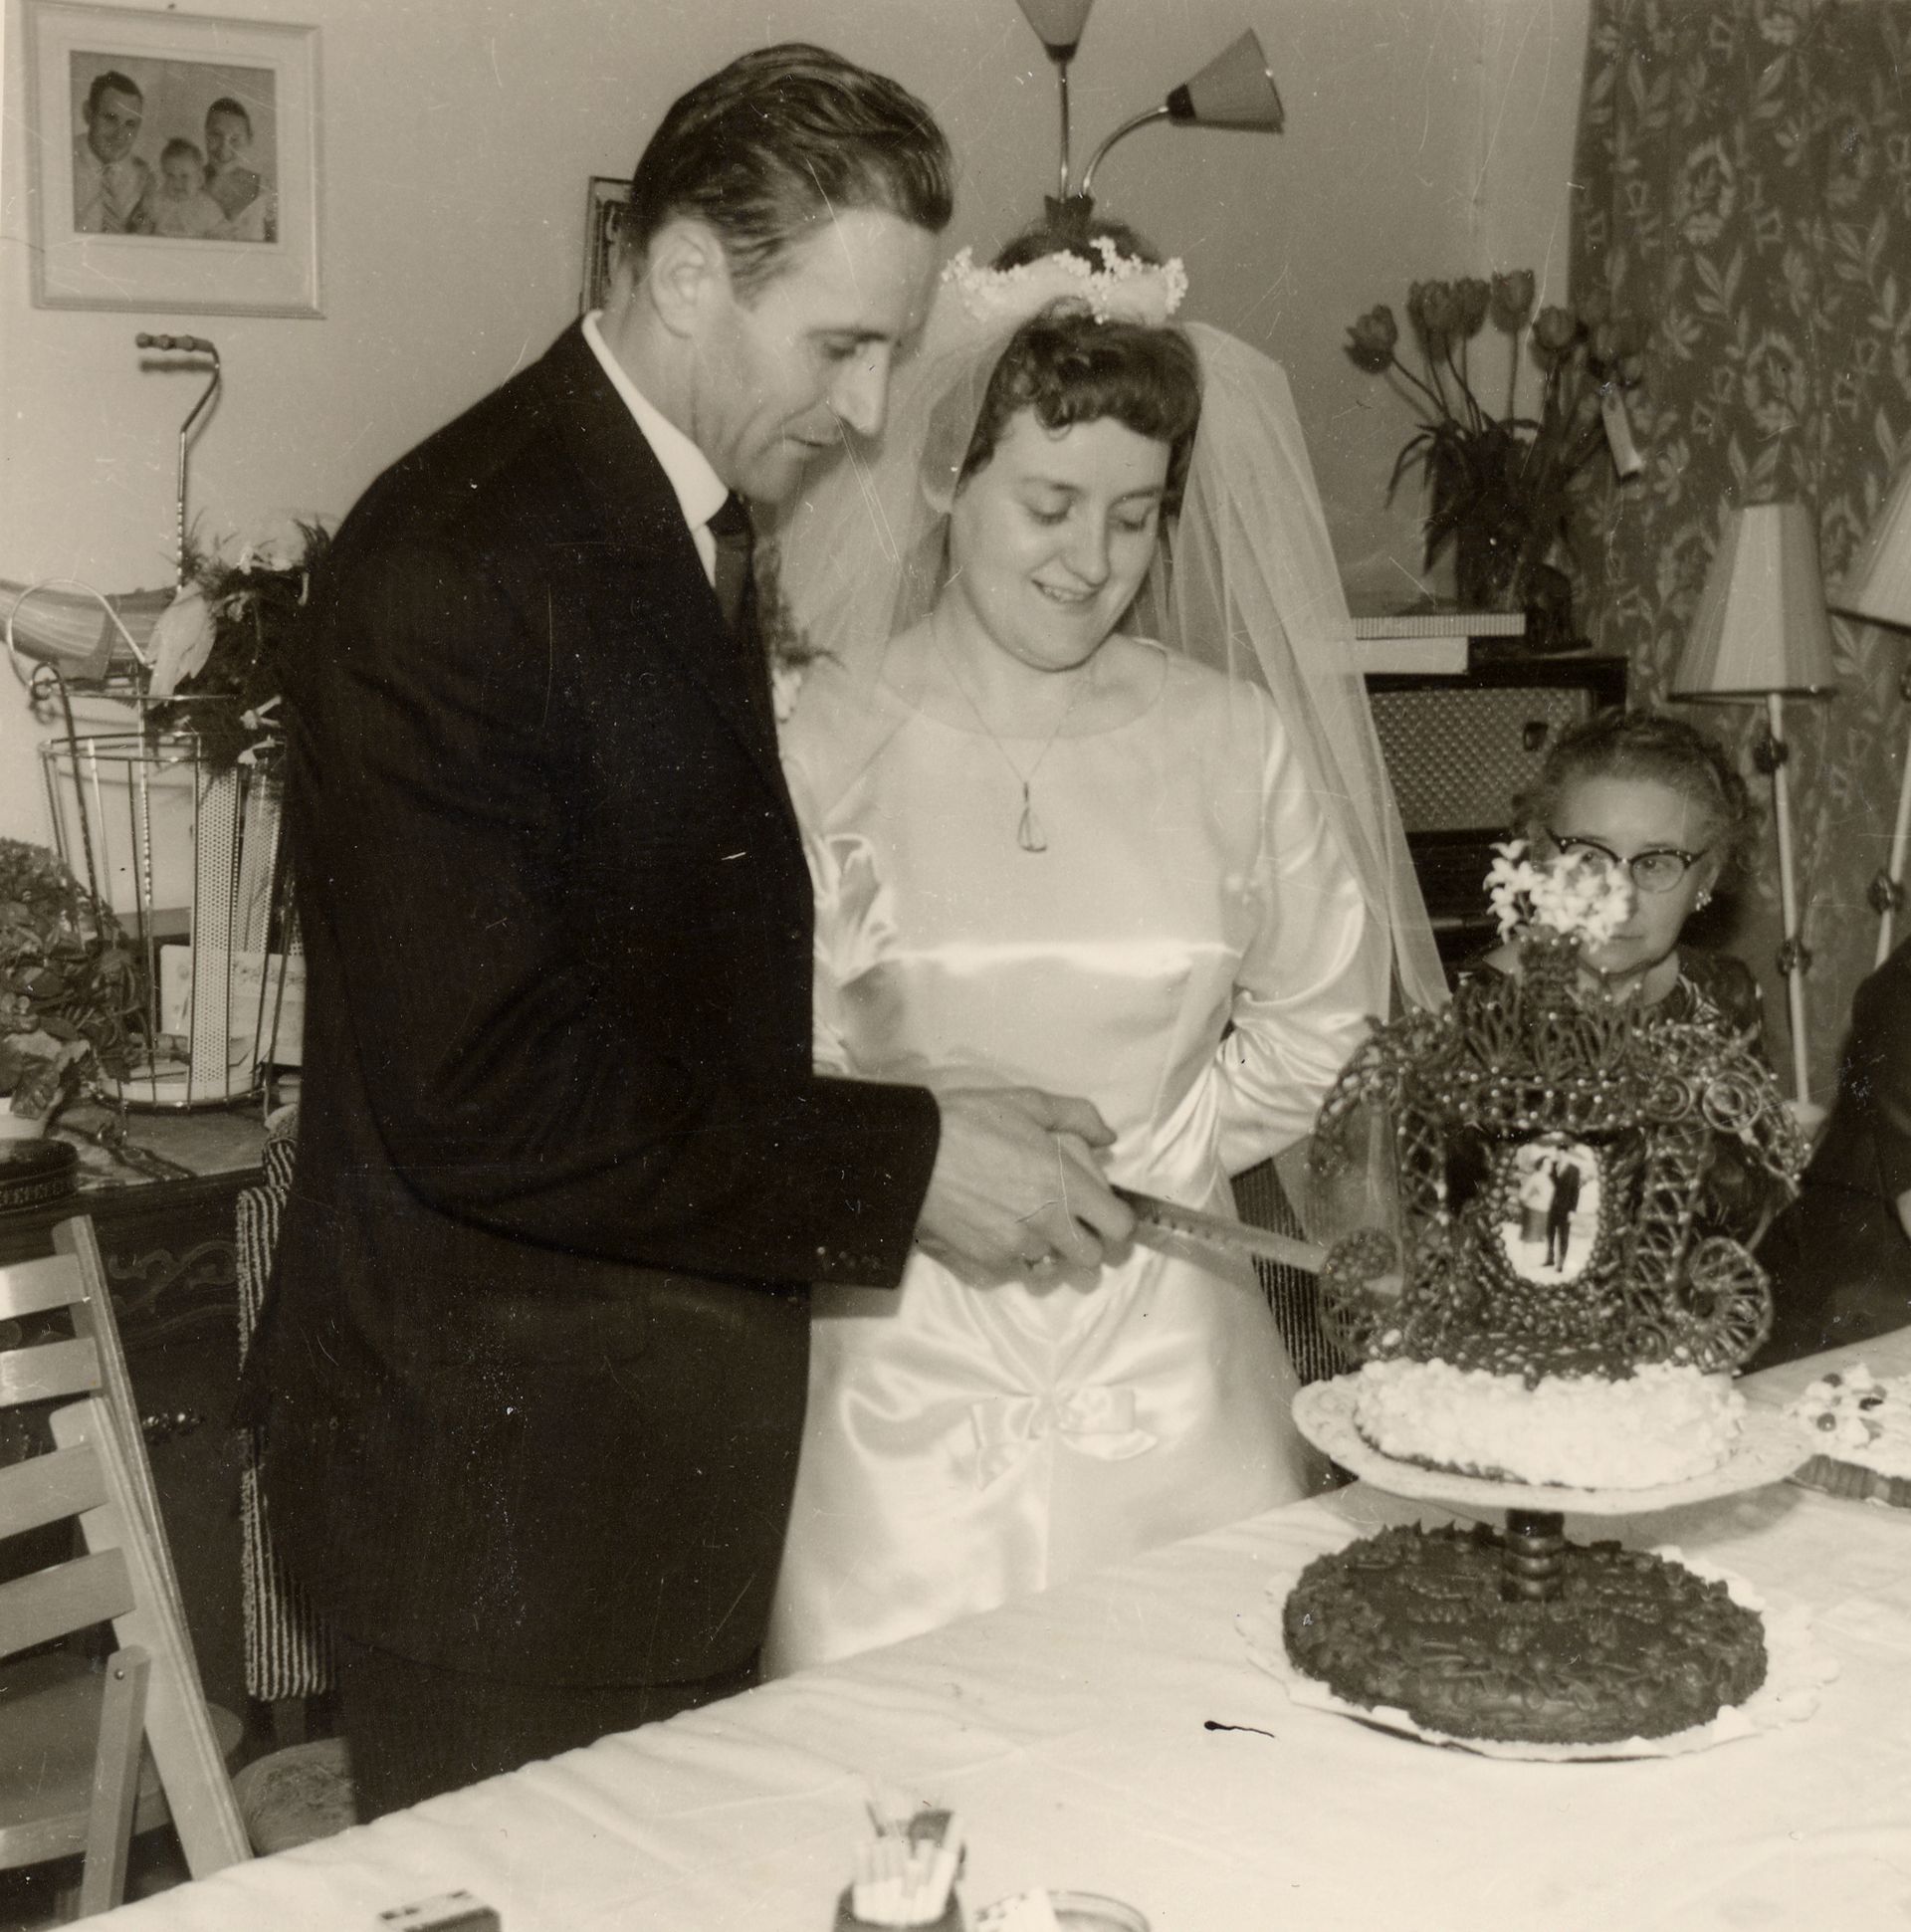 Huwelijk van een Italiaanse gastarbeider, jaren vijftig vorige eeuw.